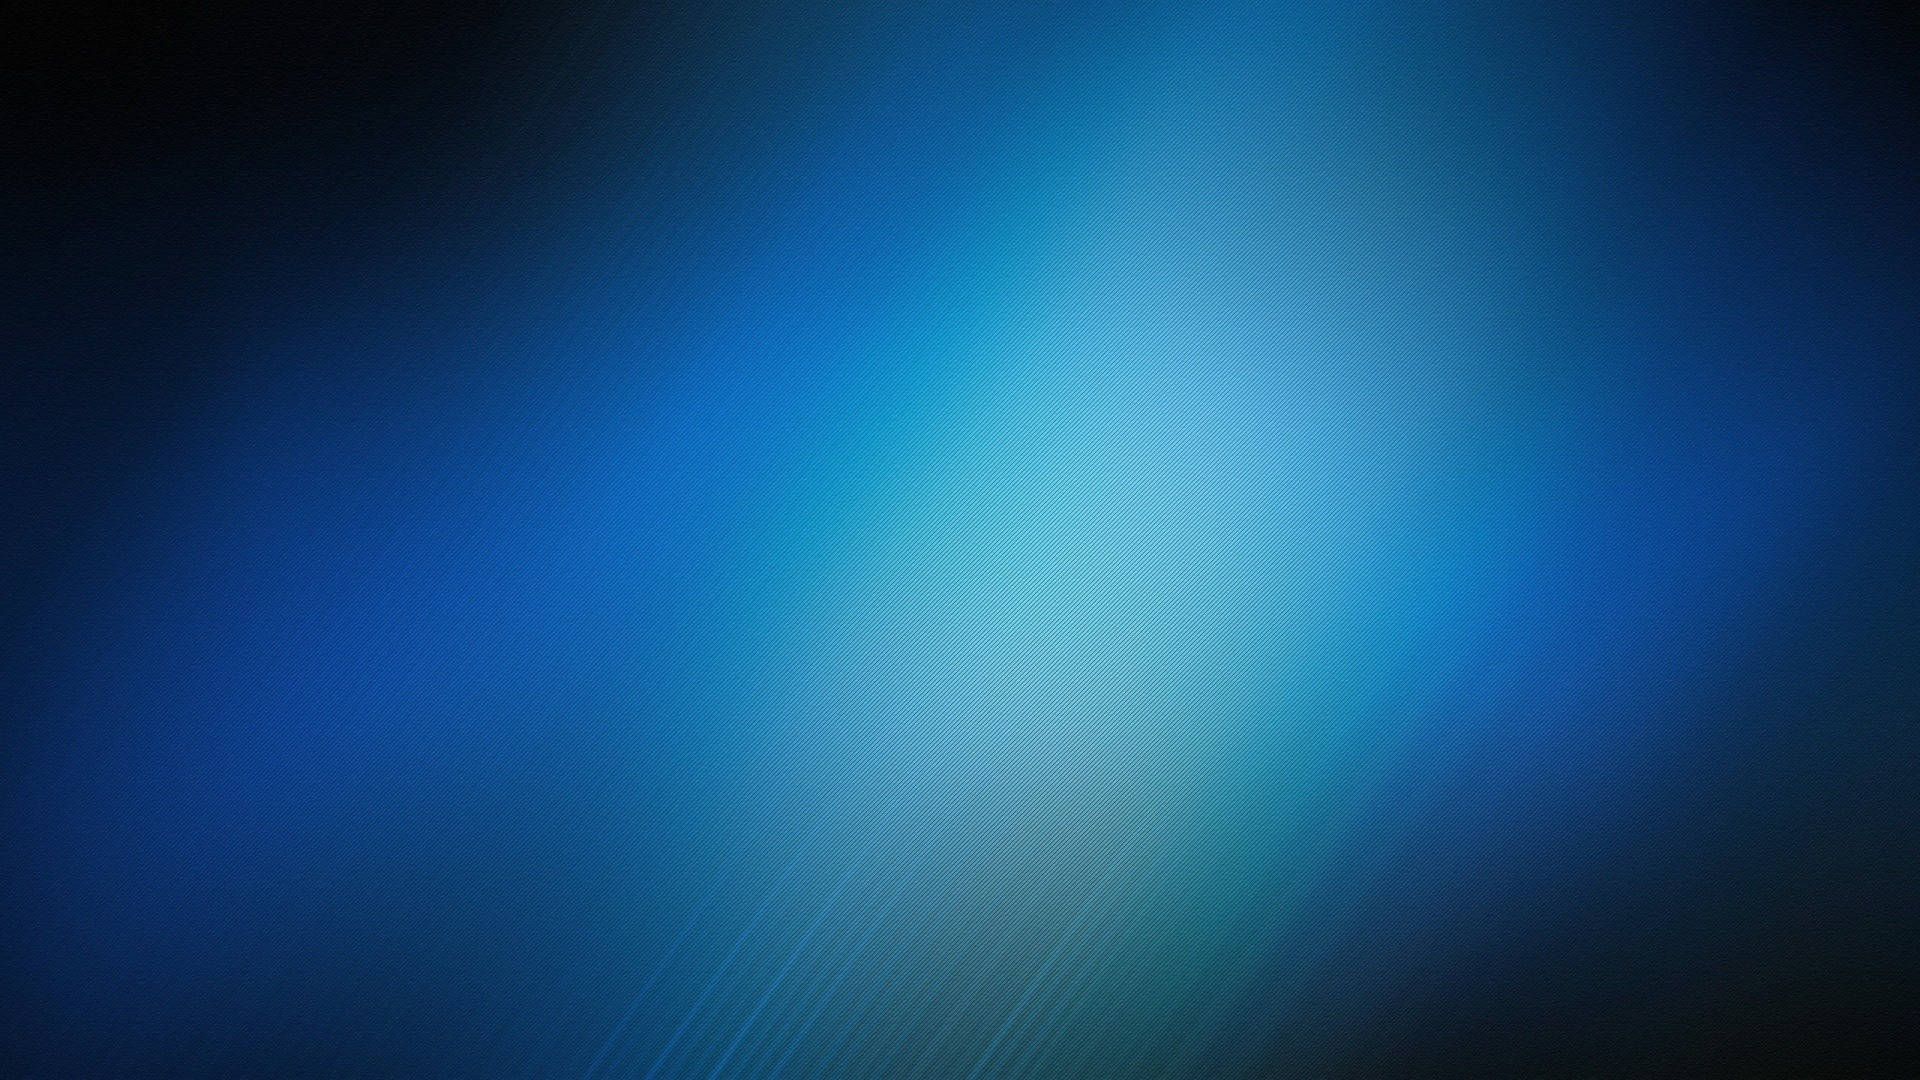 Blurry Blue Texture Wallpaper